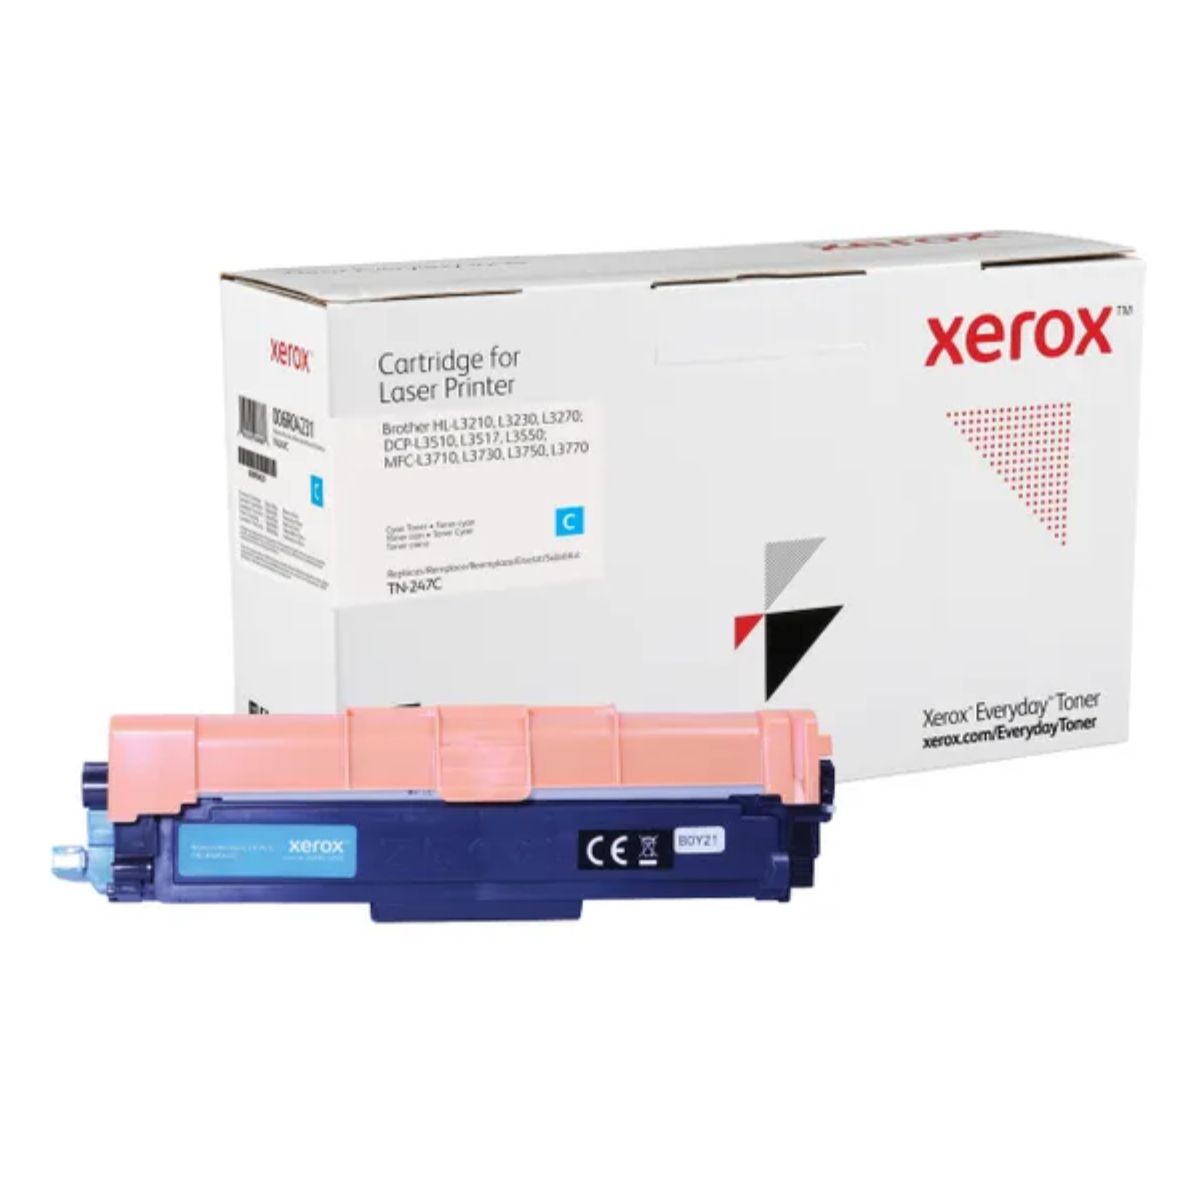 TN-243 / 247 C XL Toner laser générique pour Brother - Cyan Xerox